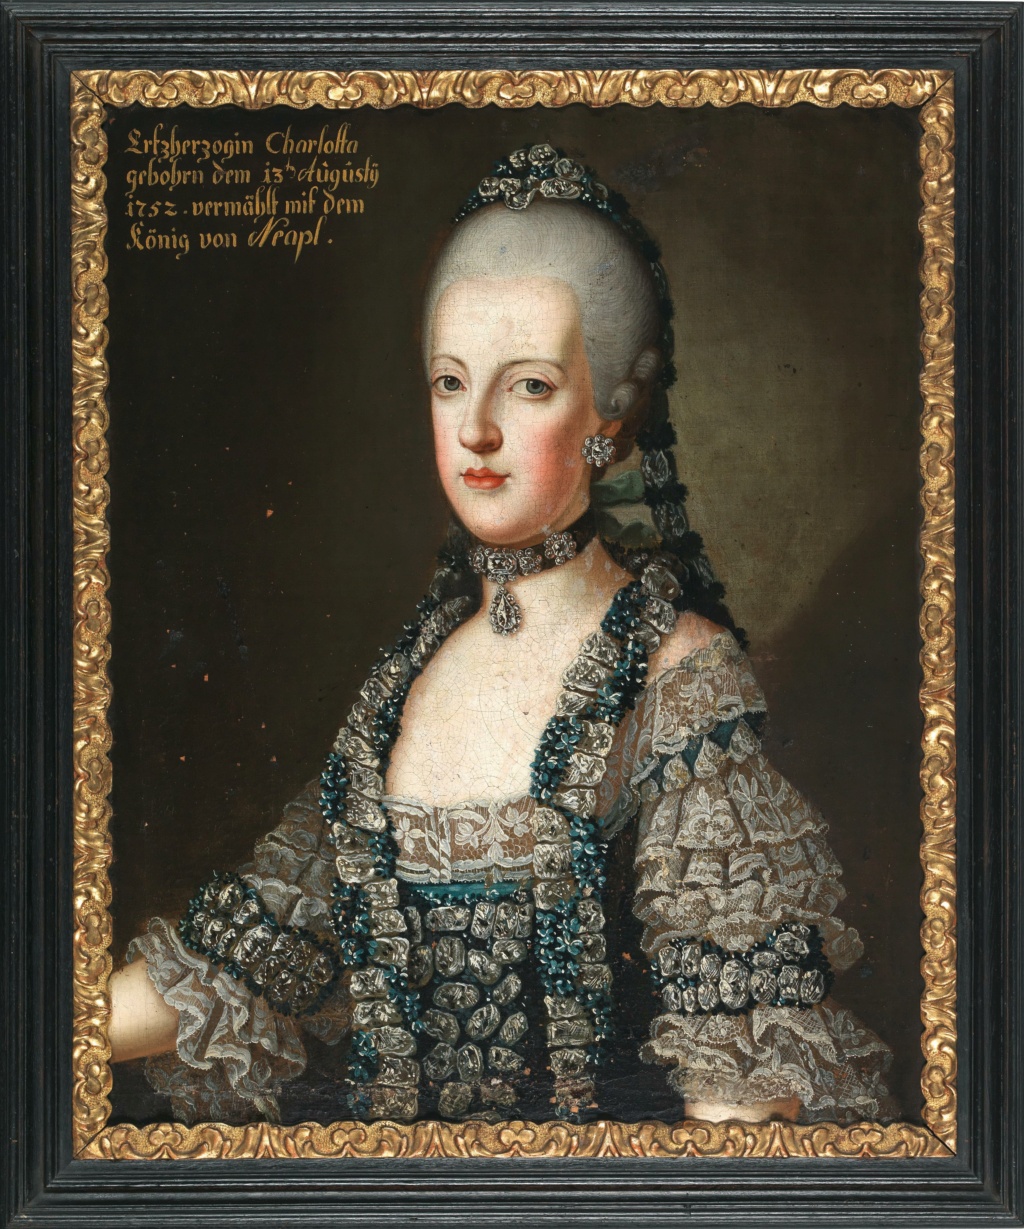 Portraits de Marie-Caroline d'Autriche, reine de Naples et de Sicile - Page 5 Habsbu13